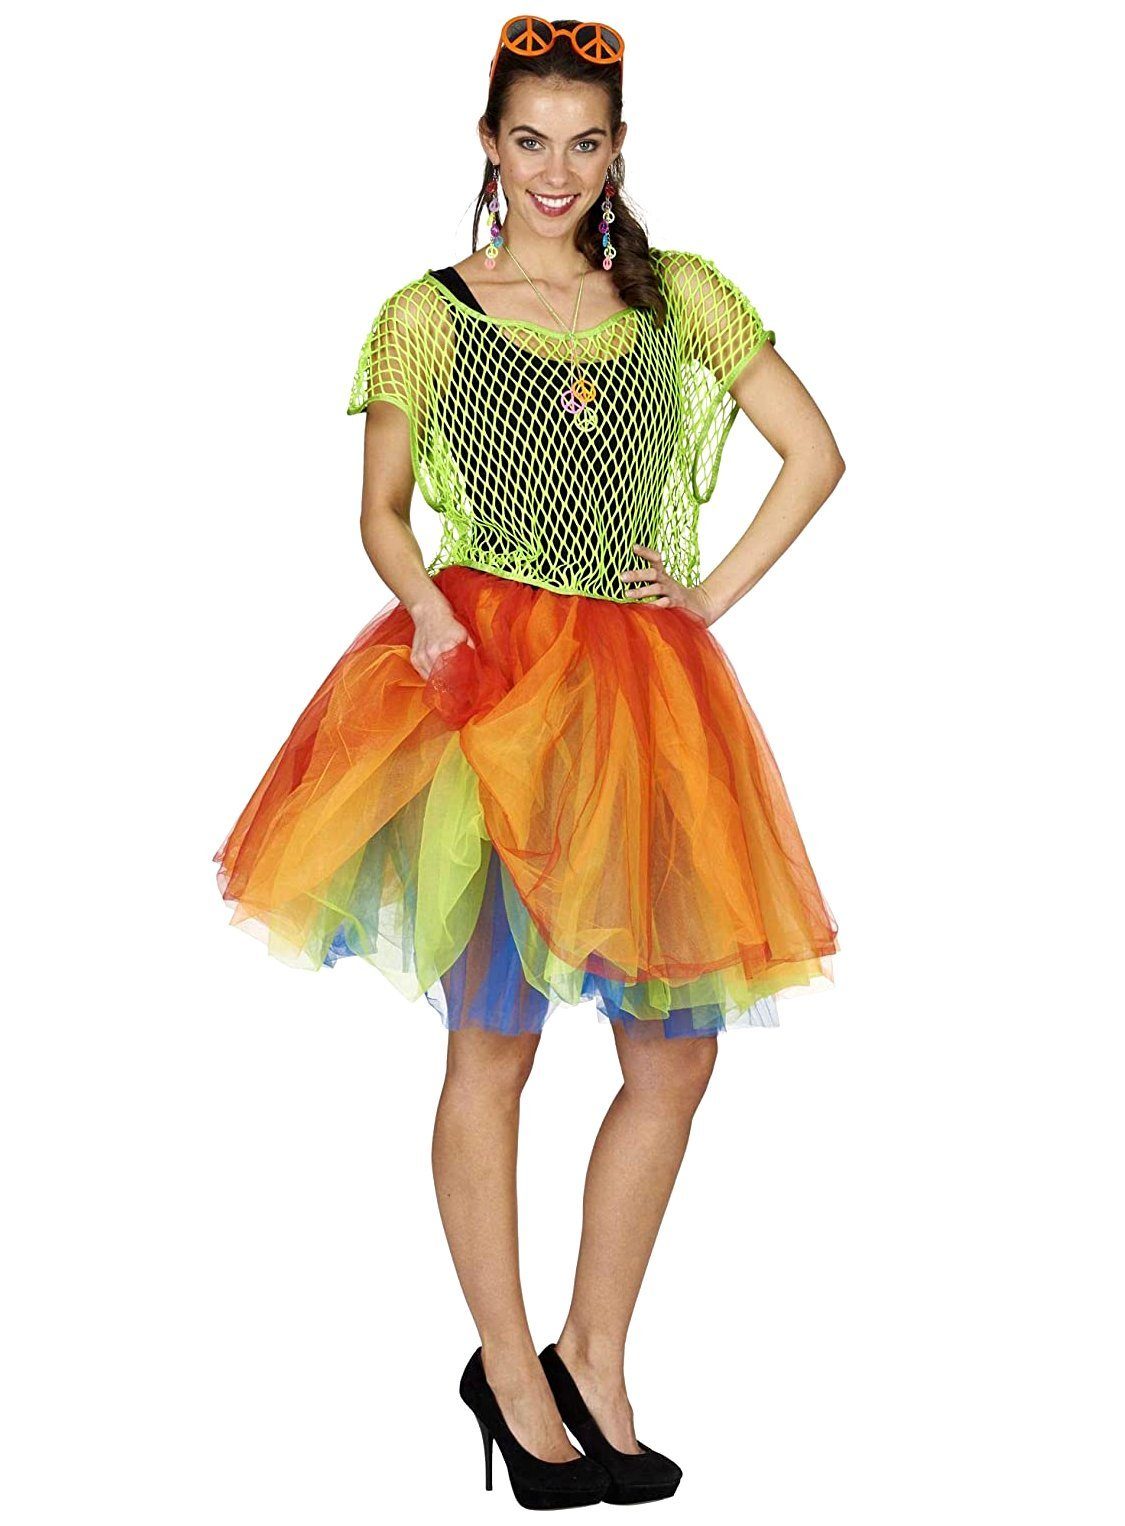 Metamorph Kostüm Regenbogen Tutu mehrlagig, Vierlagiger Ballettrock in grellbunten Farben